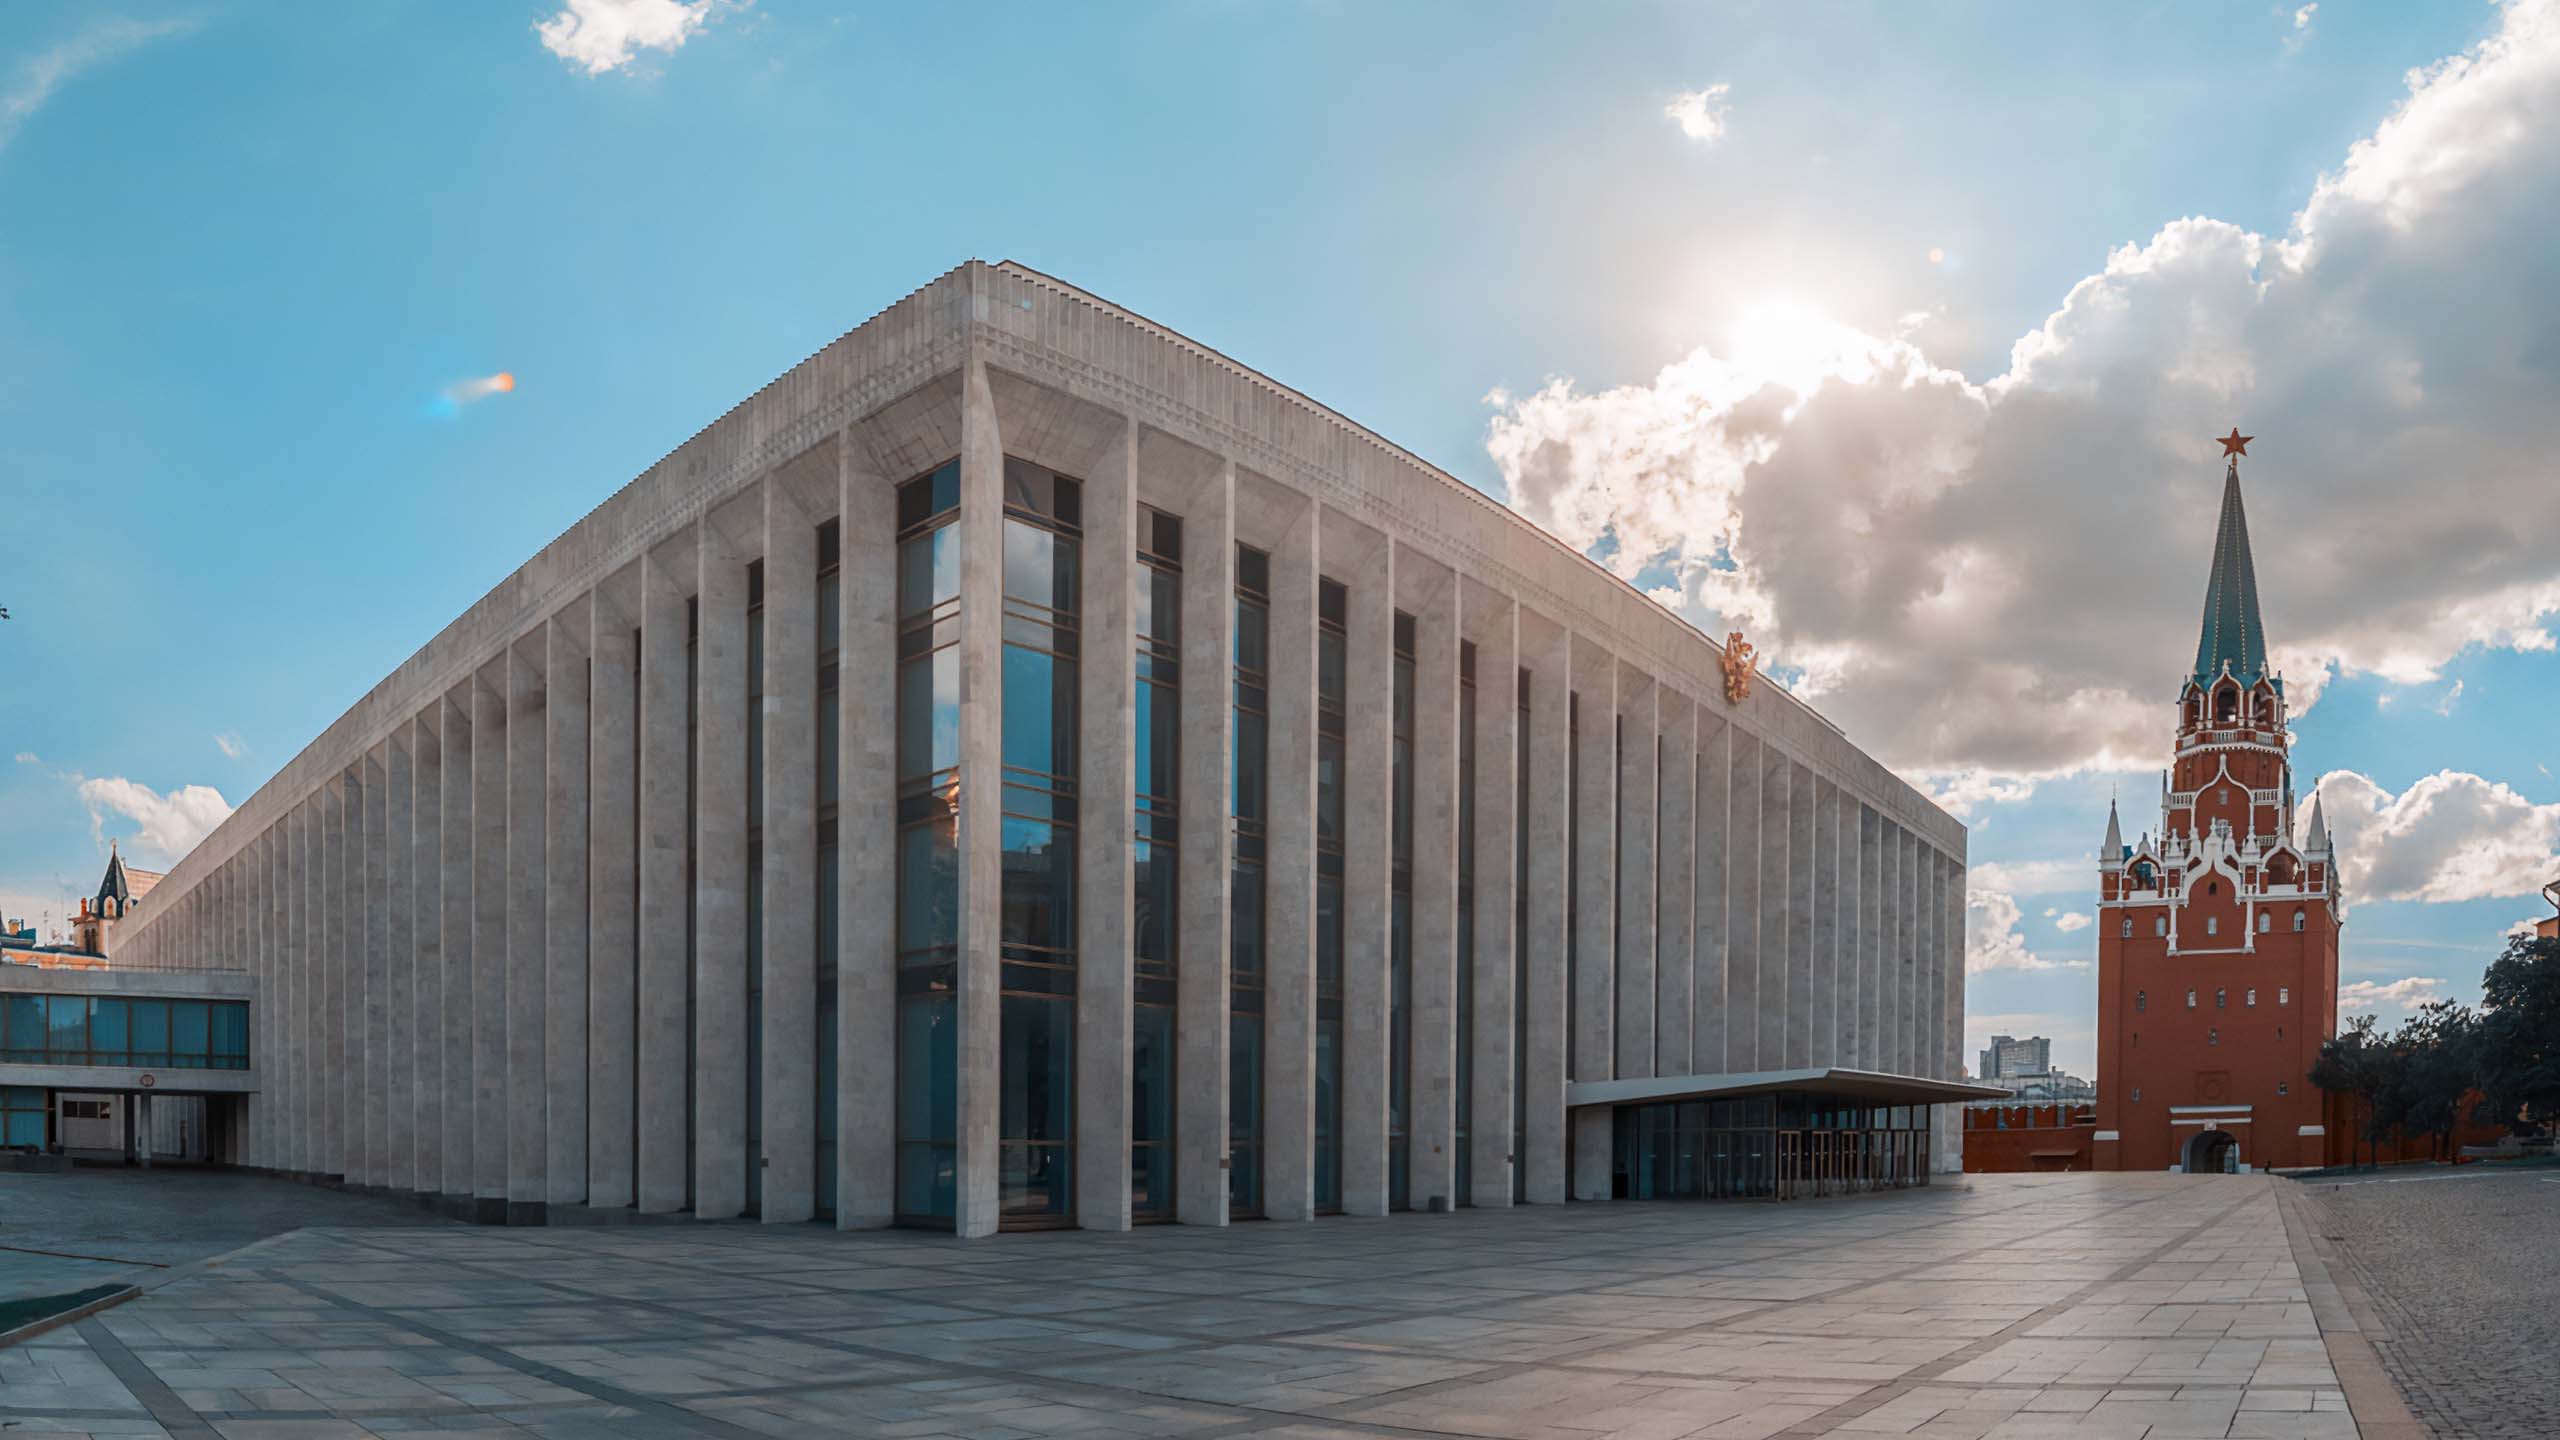 кремлевский дворец официальный сайт схема зала